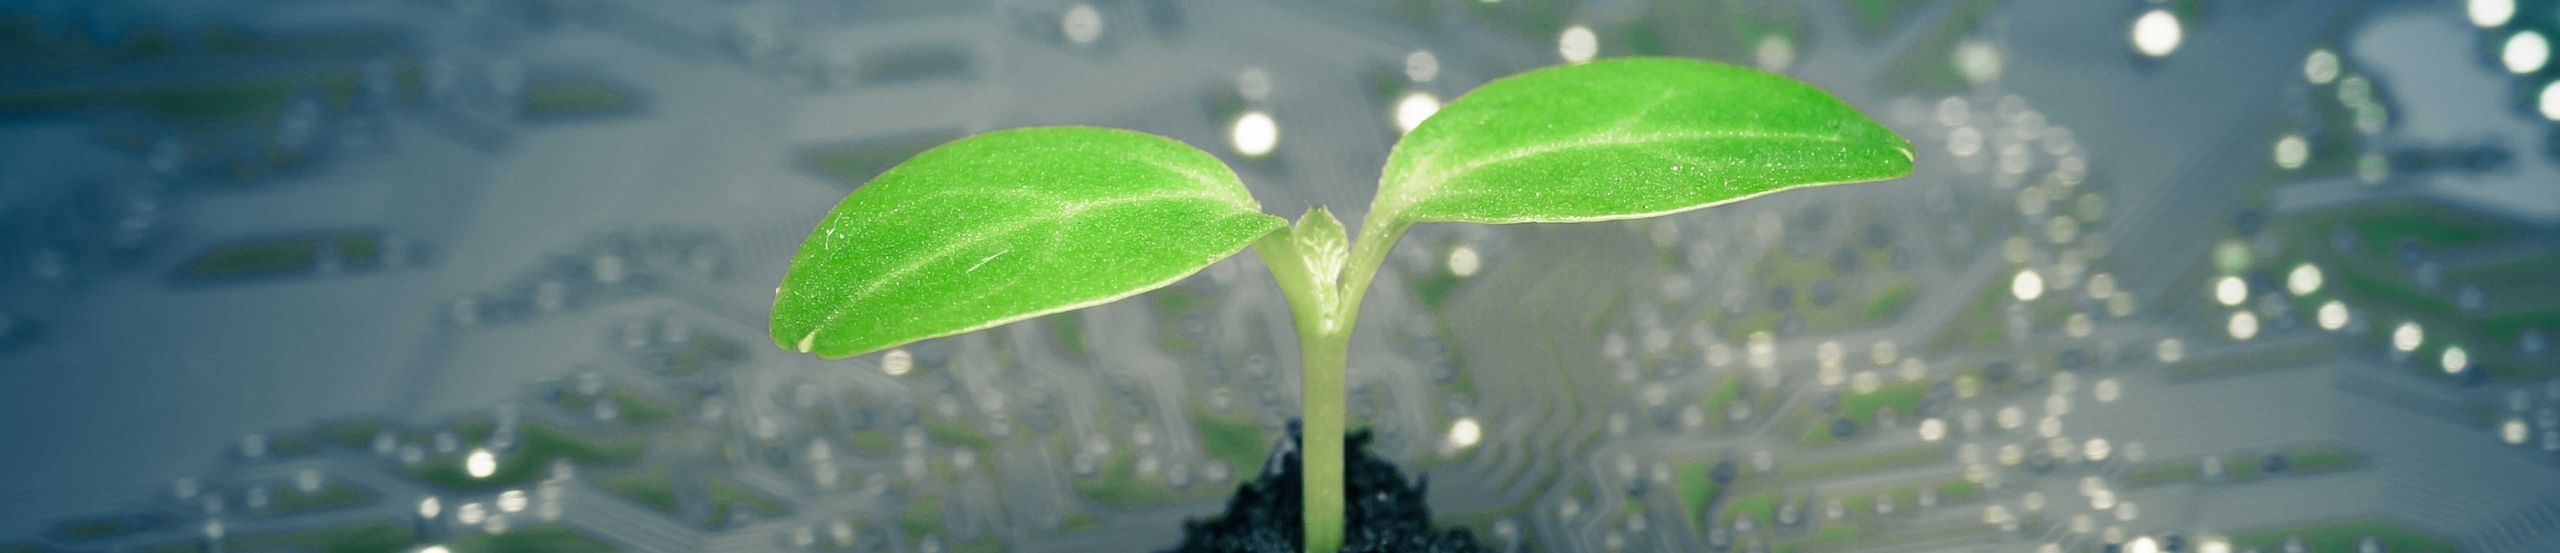 Eine kleine Pflanze wächst aus einem Erdhaufen auf einer Platine mit Leiterbahnen